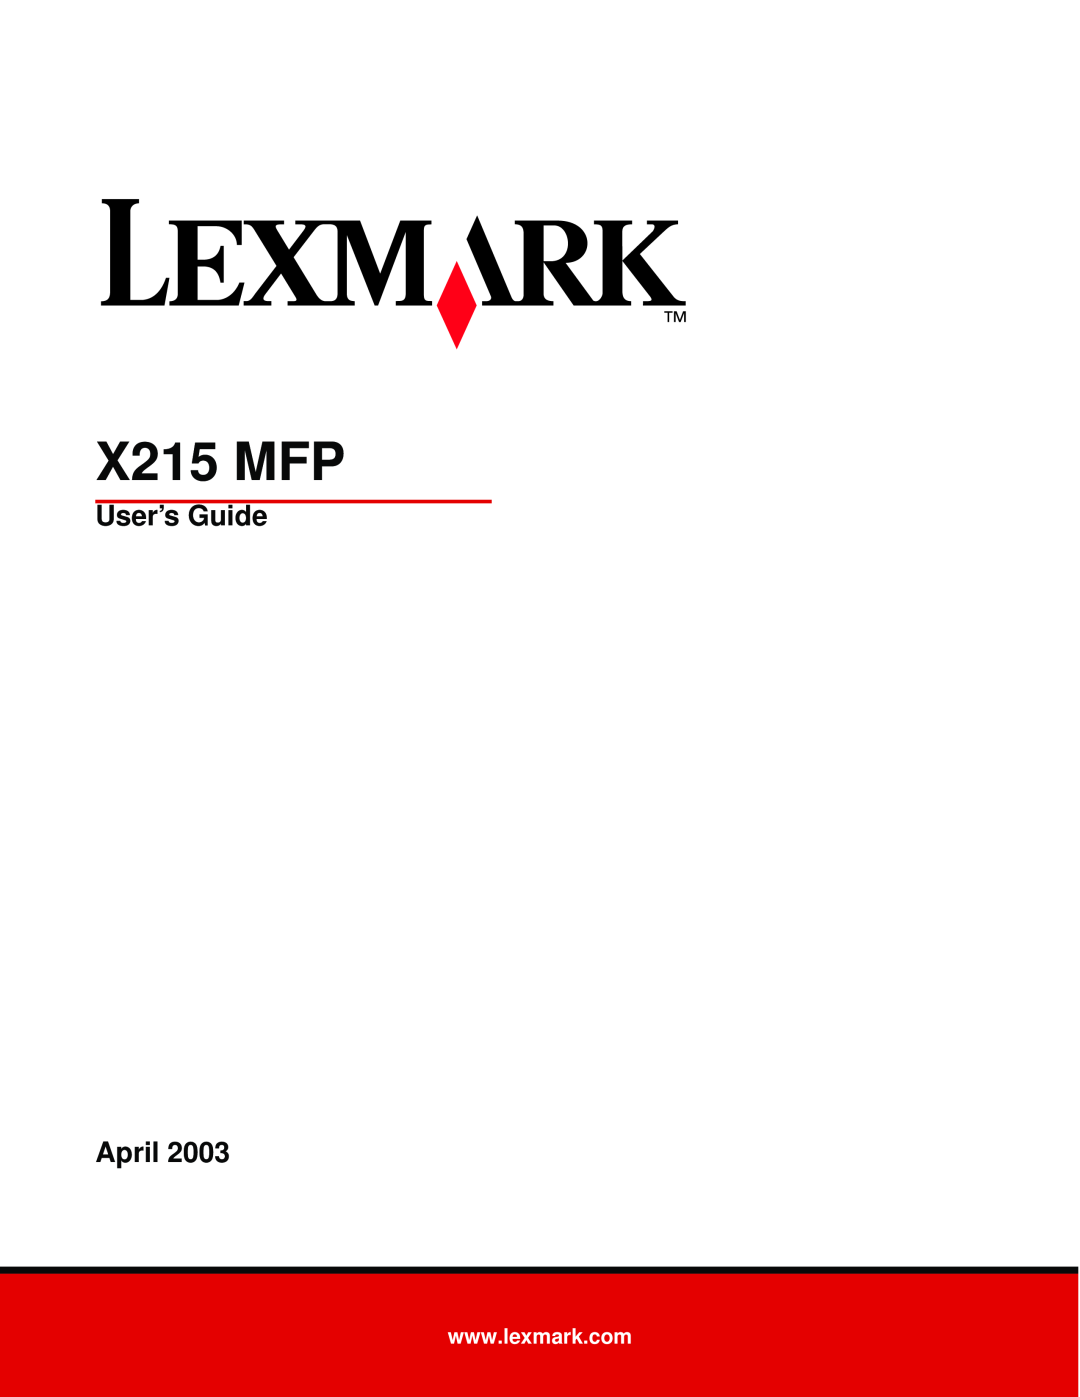 Lexmark X215 MFP manual User’s Guide April 